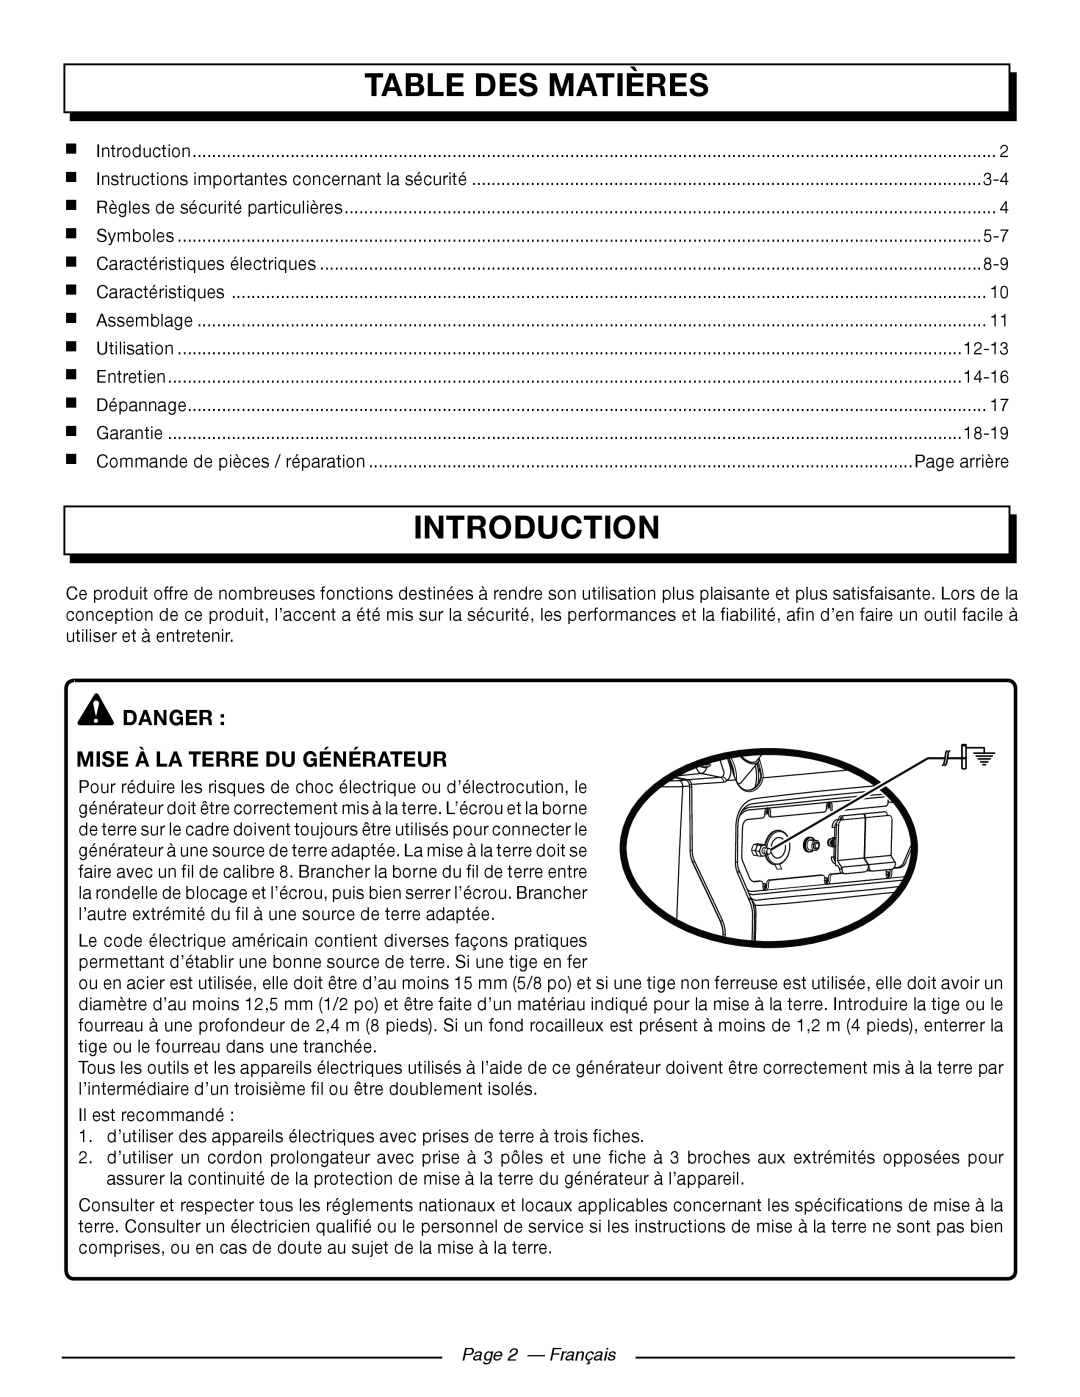 Homelite UT902250 Table Des Matières, Danger Mise À La Terre Du Générateur, Page 2 — Français, Introduction 